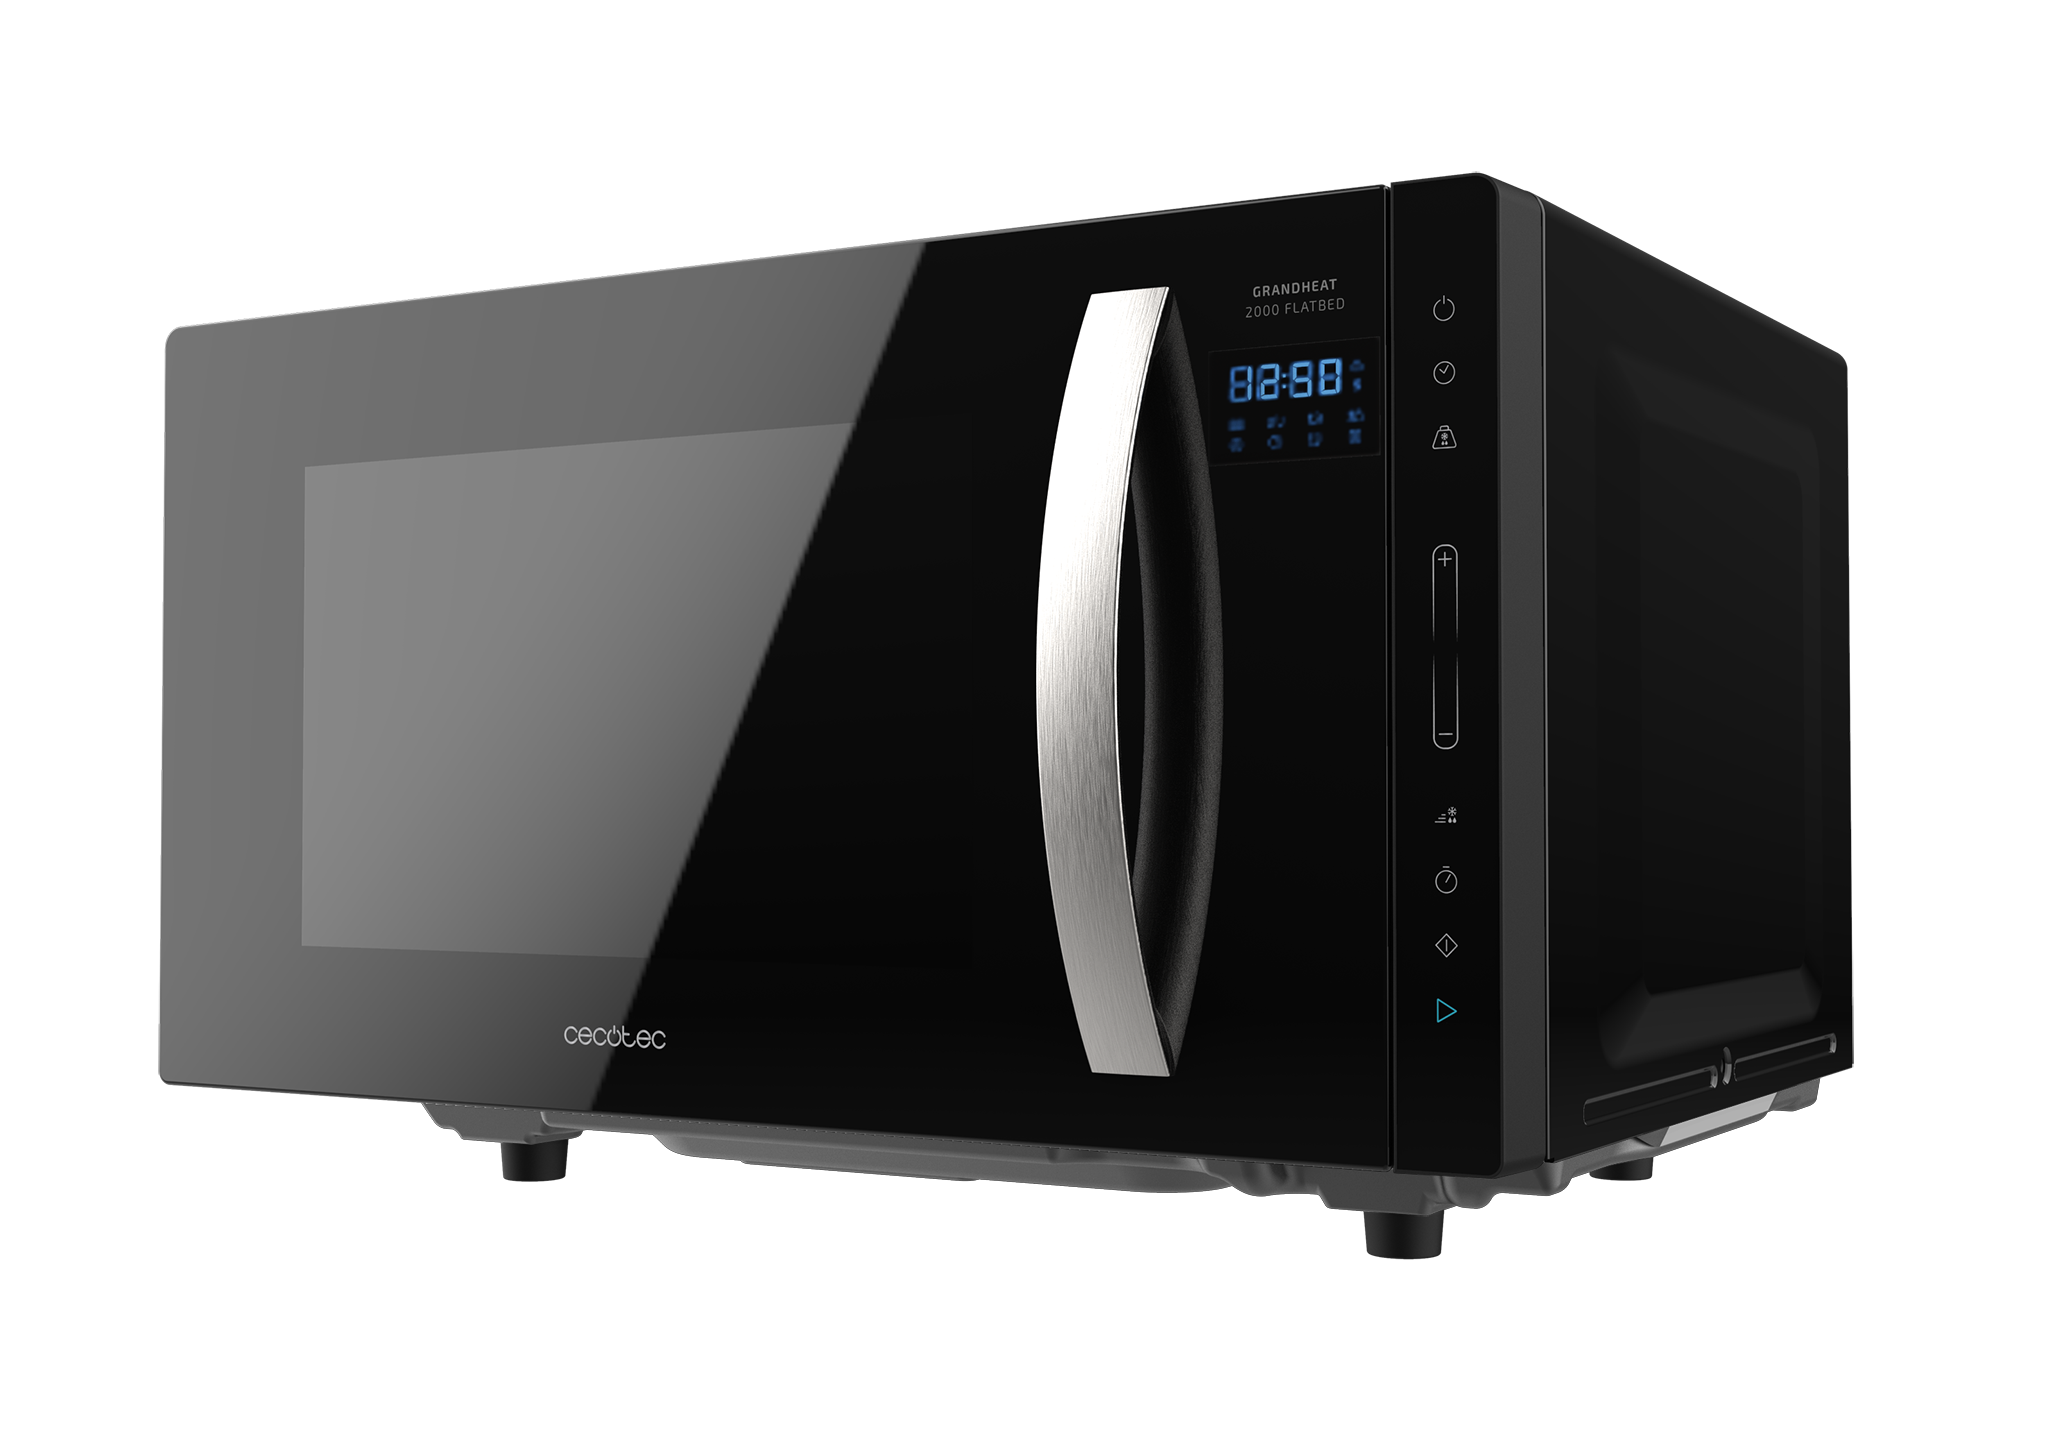 Micro-ondes sans plateau GrandHeat 2300 Flatbed Touch Black. 23 litres de capacité, 8 fonctions préconfigurées, 800 W de puissance, minuterie jusqu'à 95 min